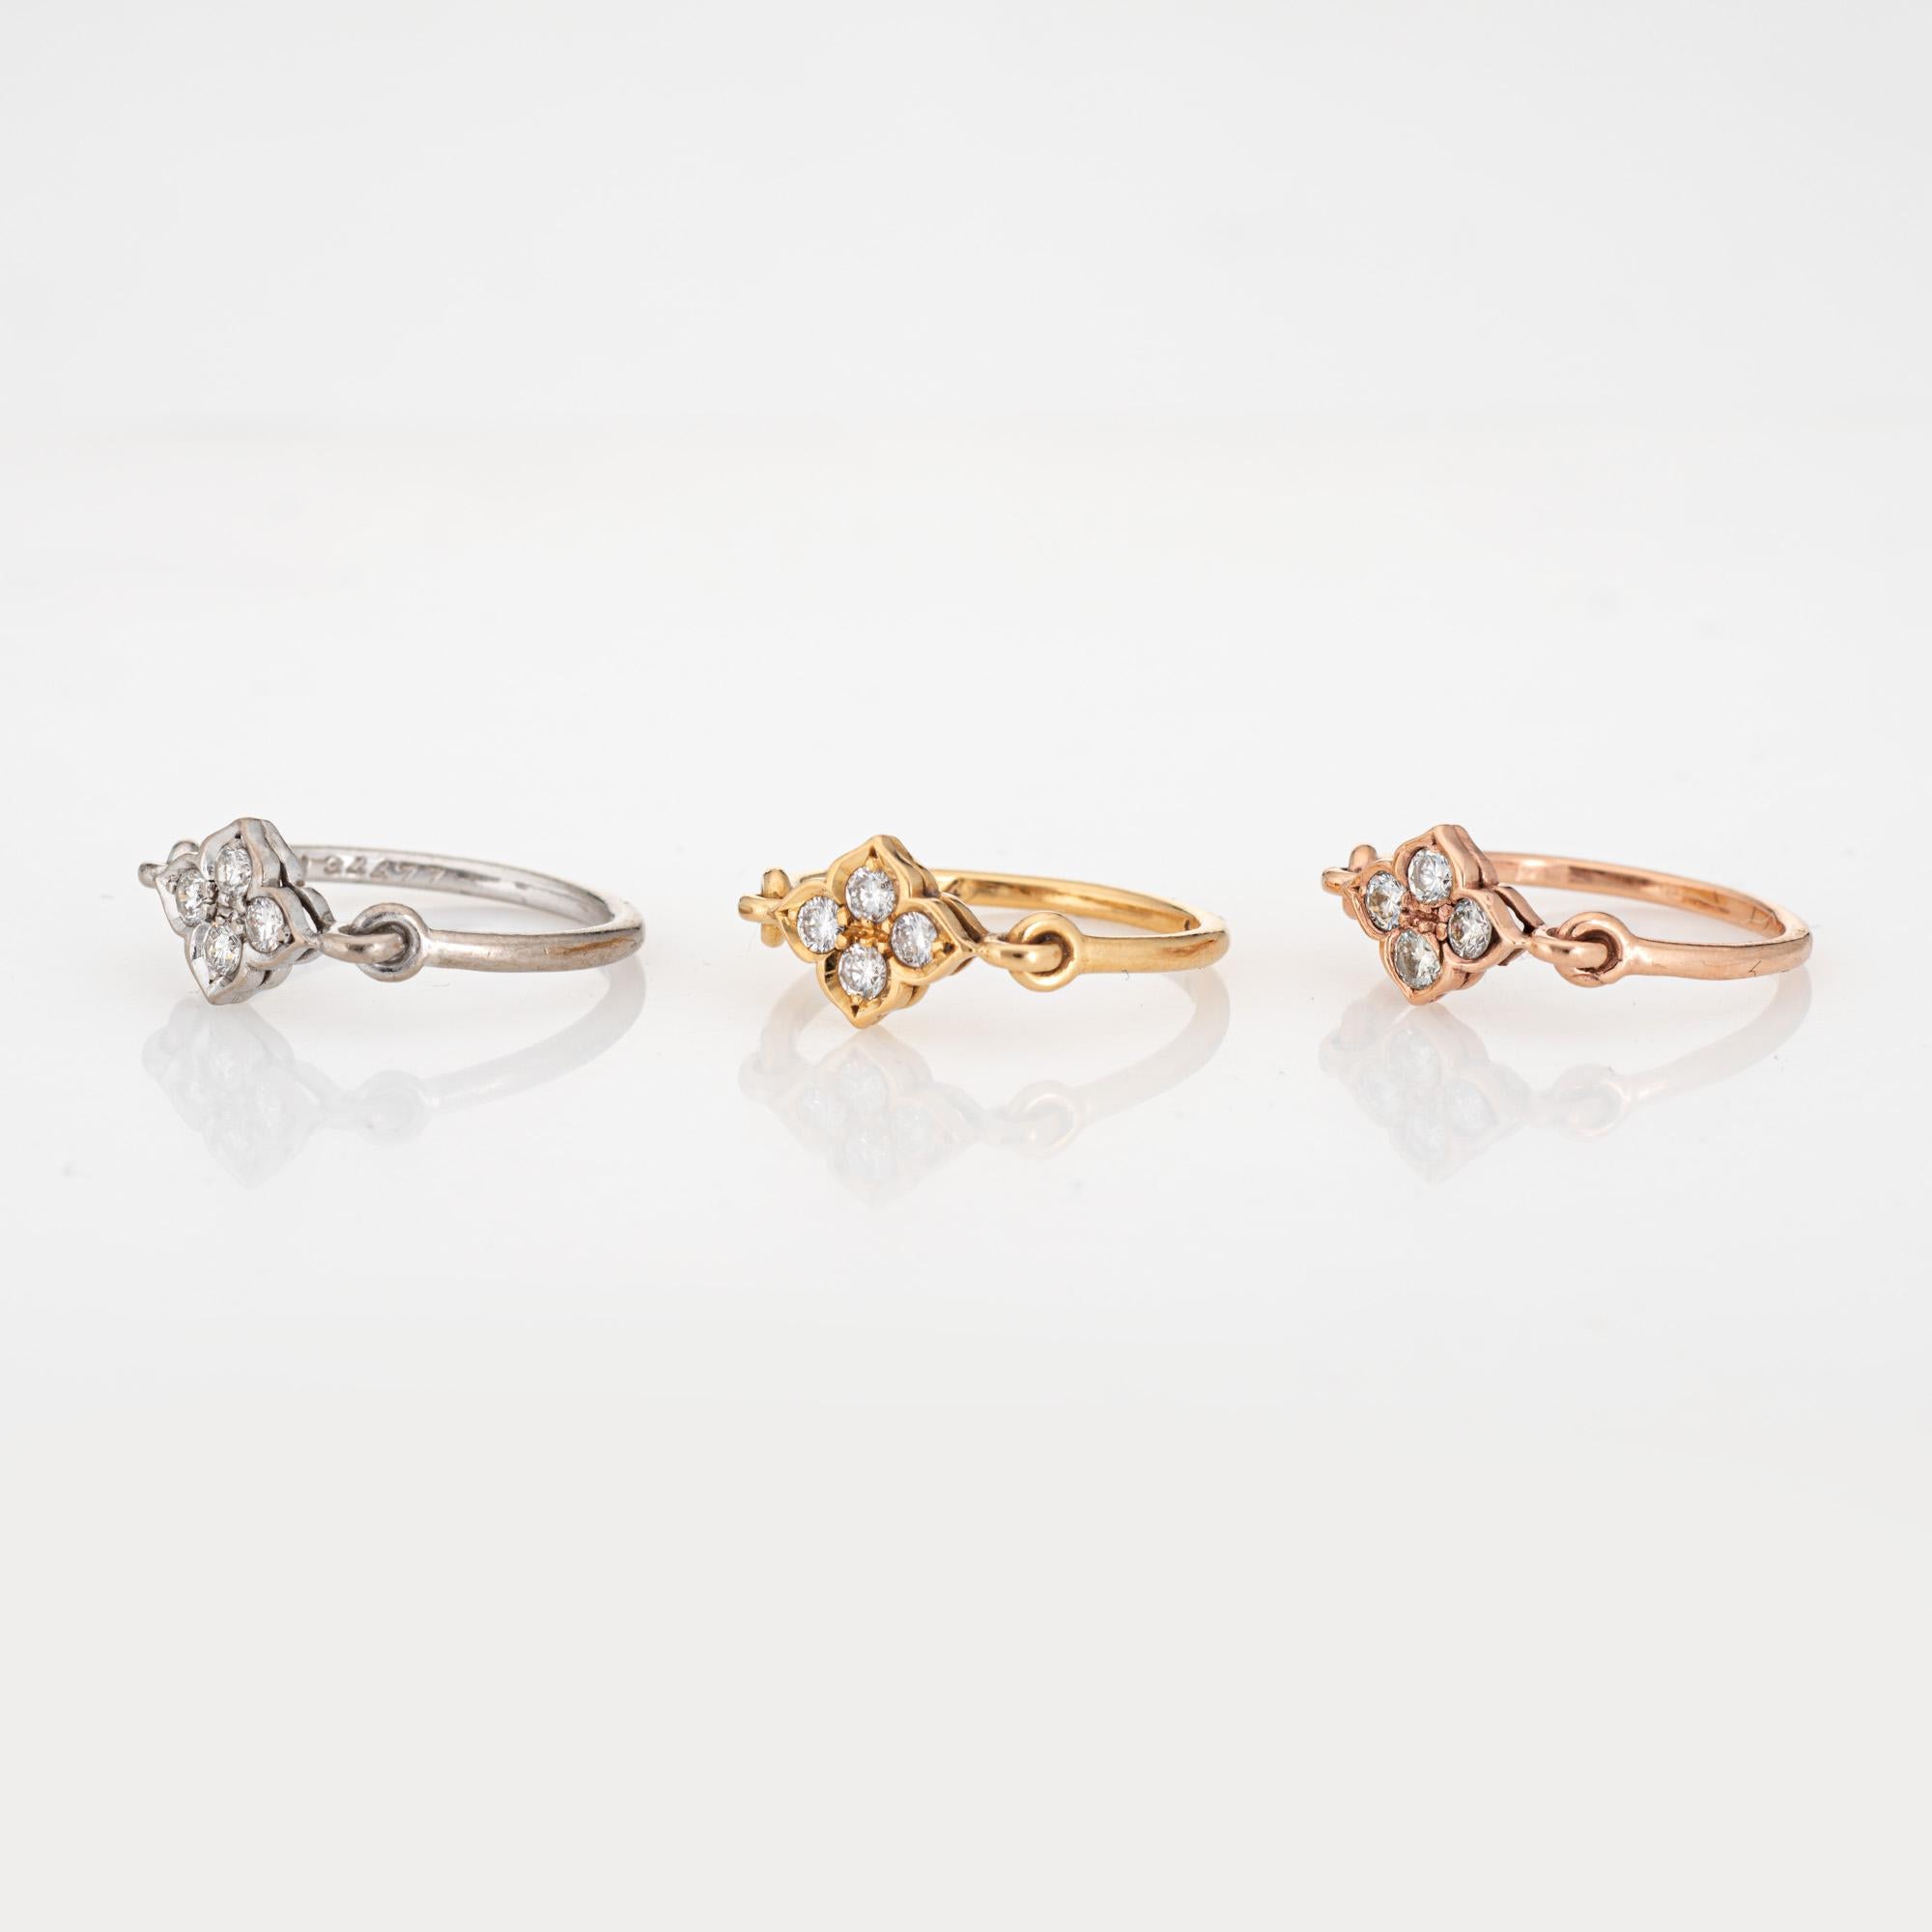 Pre owned Satz von 3 Cartier Hindu Diamantringe in 18 Karat Weiß-, Rosé- und Gelbgold gefertigt.  

Zwölf runde Diamanten im Brillantschliff (4 pro Ring) mit einem geschätzten Gesamtgewicht von 0,36 Karat (geschätzte Farbe F-G und Reinheit